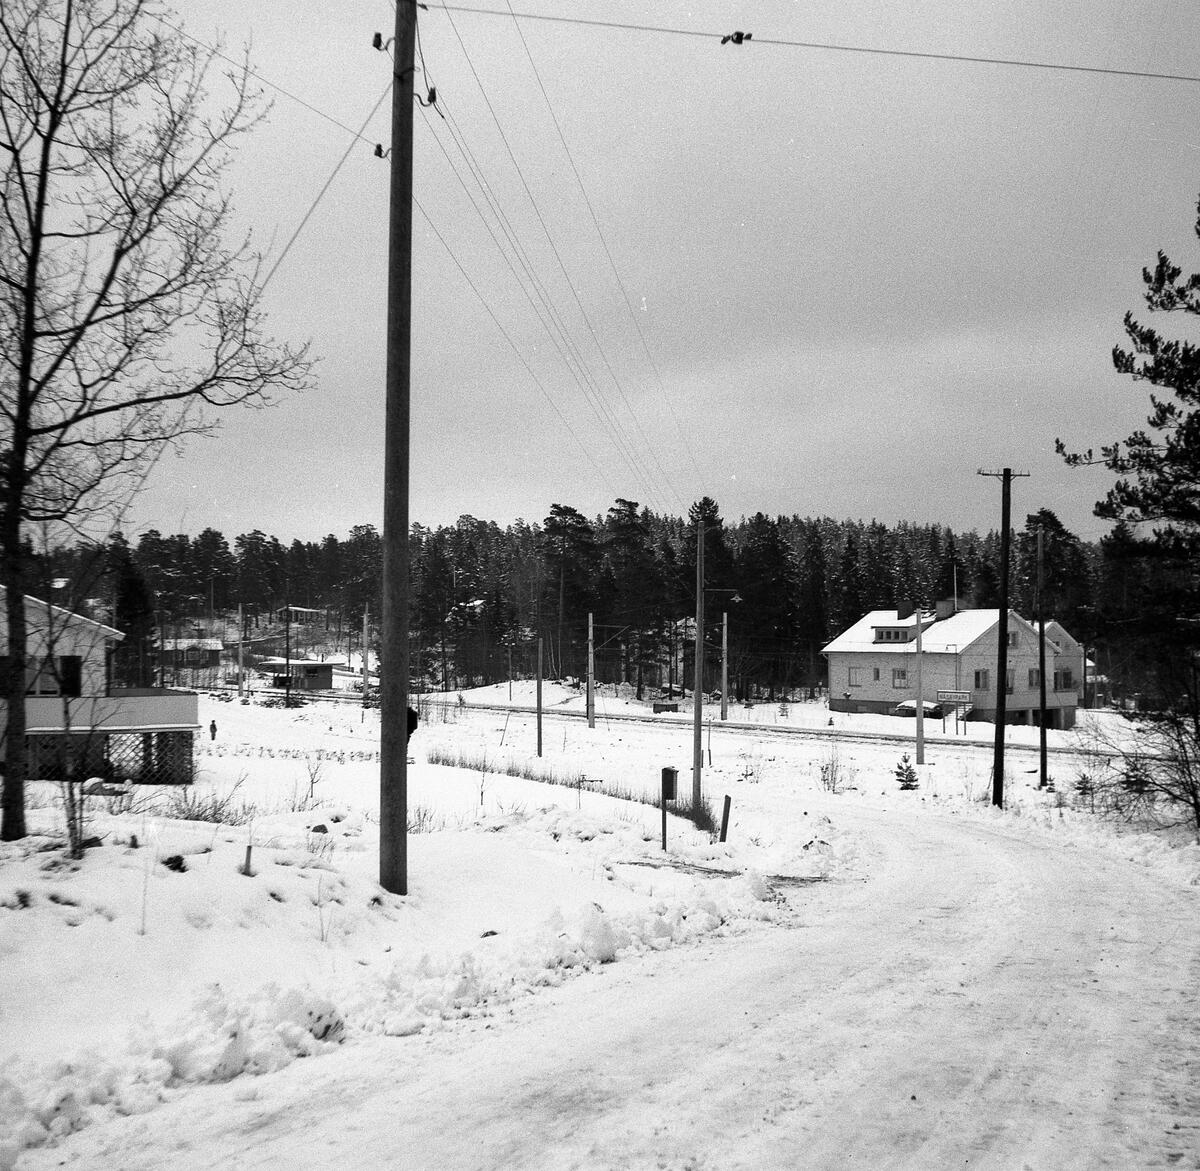 Bilden tagen från, dåvarande, Flottiljvägen när Flottiljvägen gick hela vägen fram till Näsbyparks station.
Vindskyddet ses till vänster om närmaste elstolpe, bakom vindskyddet Djursholmsvägen.
I villan till höger i bild fanns en fiskaffär.
Till vänster om vindskyddet ligger Sjötullstugan. ; Tullhus O DvT och tidigare ryttarstuga, även benämnt Näsby Ryttarstuga. och Sjötullsstugan. Nedbränt 1963. Namnet Sjötullstugan tyder på att det funnits en tullstation för resenärer via Stora Värtan.
Källor: Hfl och THF skrift nr 16 sid 108, nr 20 sid 42, nr 23 sid 21, nr 26 sid 56, 57, 63,73,74 och 134.
Hfl 1890-95: torparen Abraham Englund f. 1812 med hustru, ett barn, ett barnbarn och två fosterbarn. ::